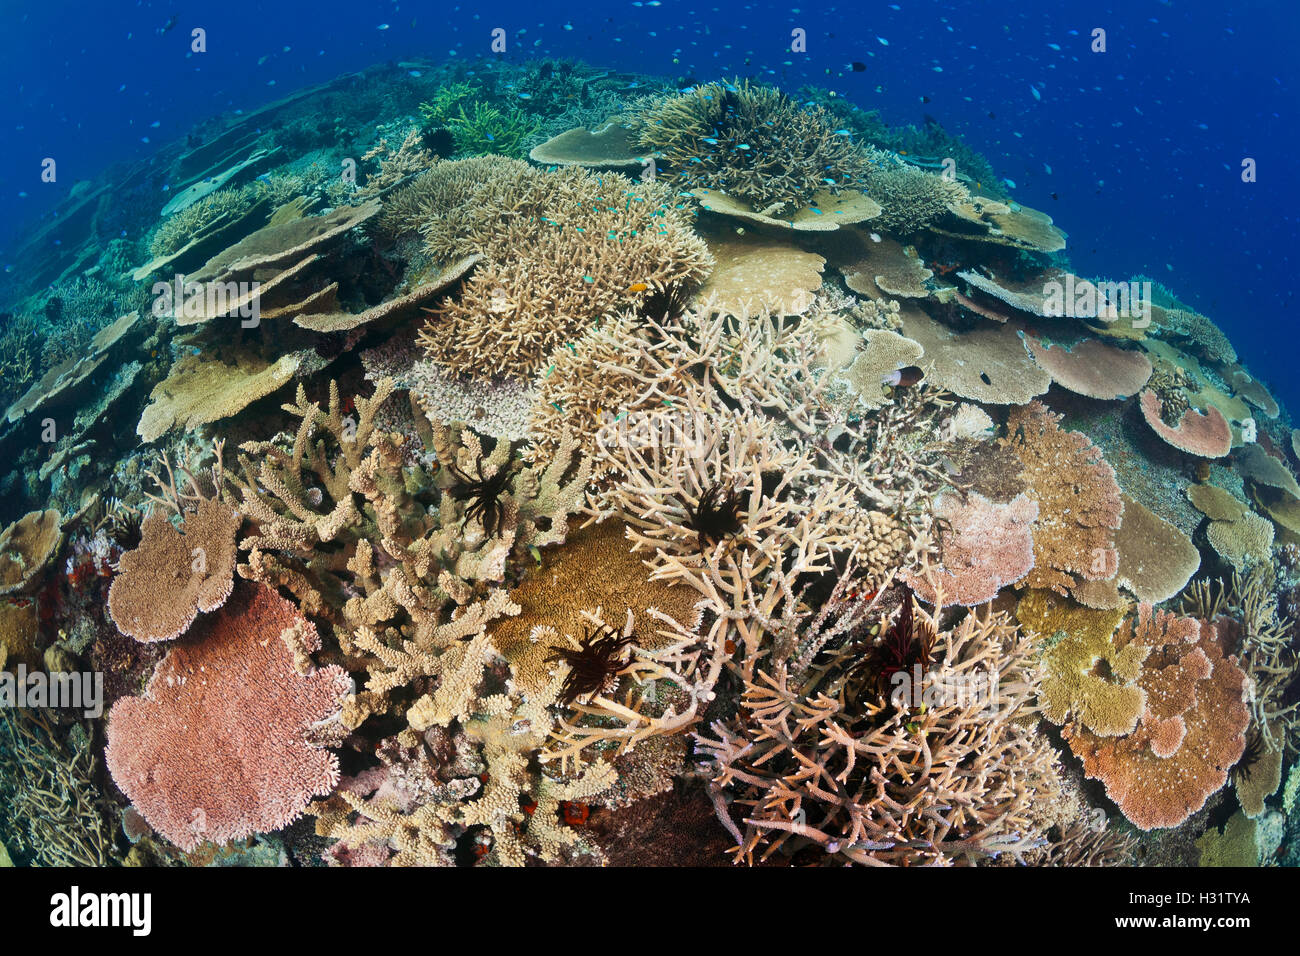 QZ0828-D. Gesunden Korallenriff mit beeindruckenden harten Korallen Artenvielfalt und Abdeckung. Australien, Great Barrier Reef, Pacific O Stockfoto